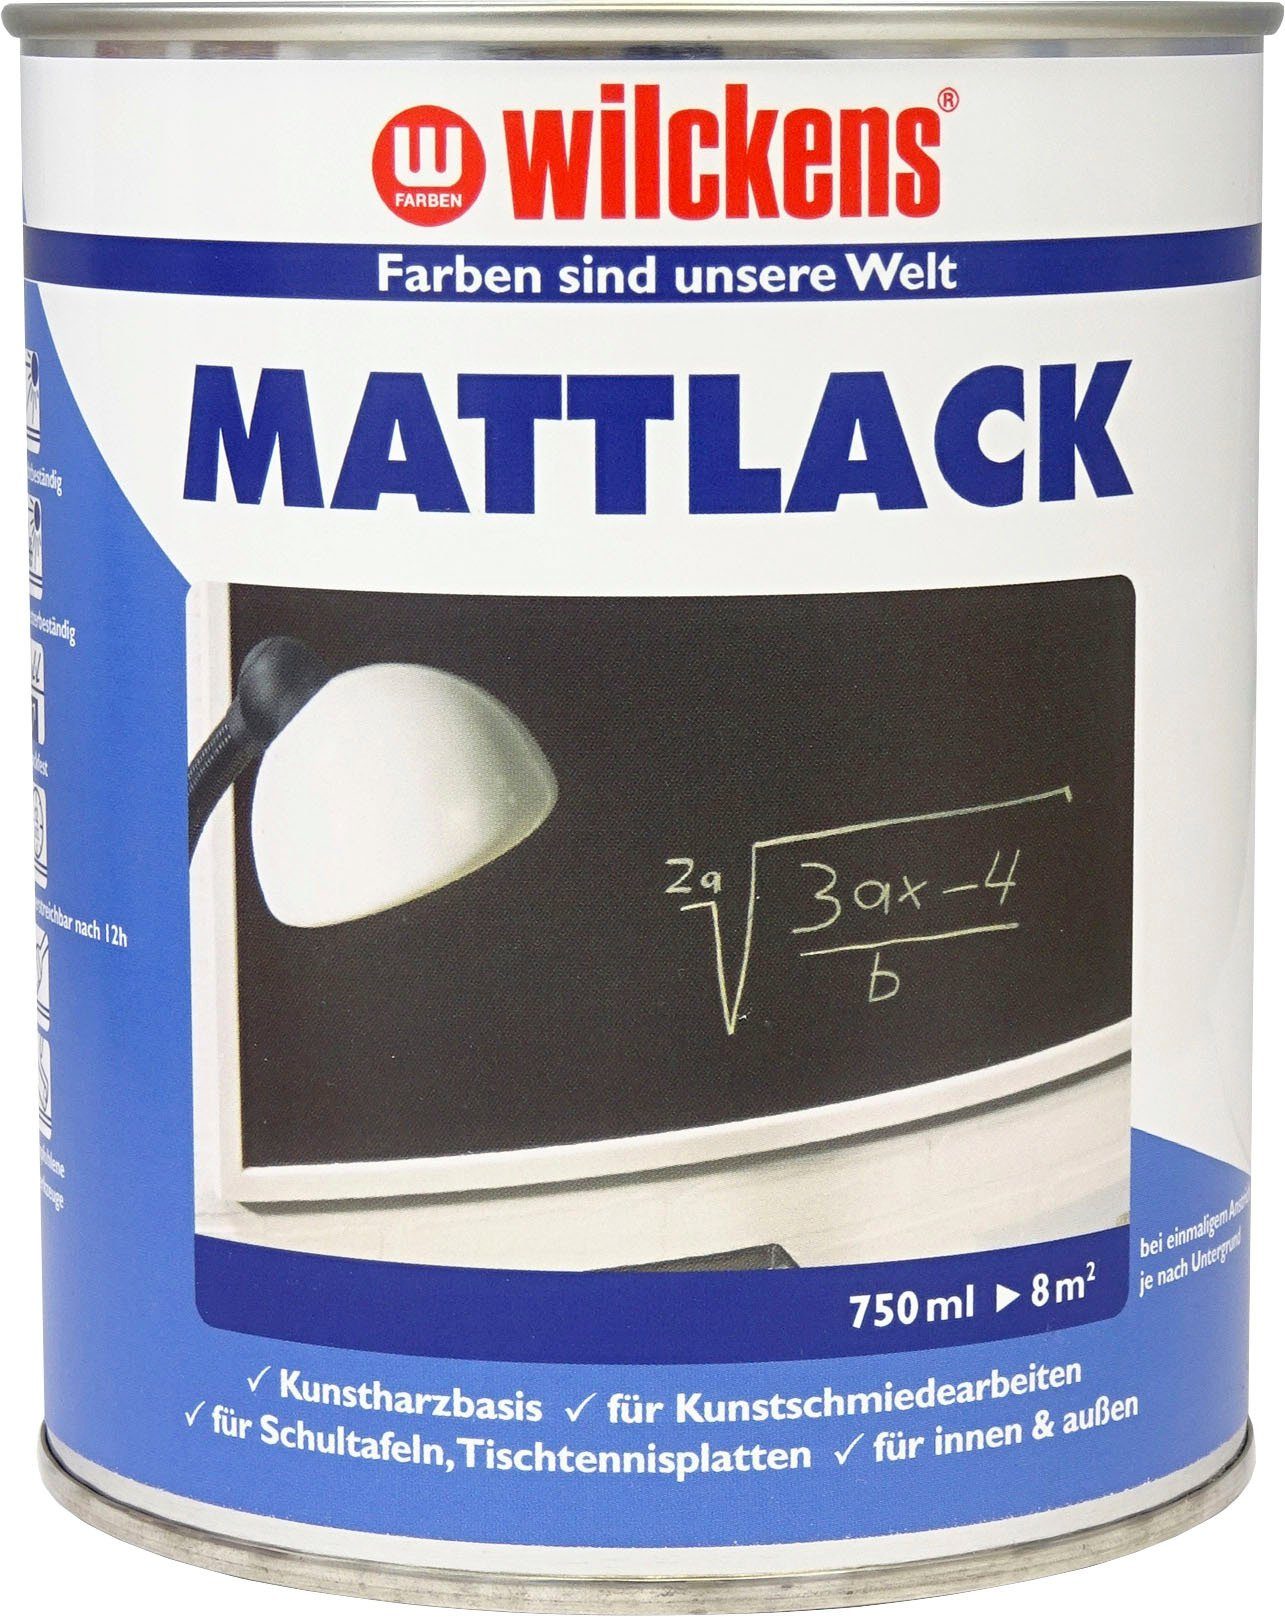 Mattlack Kunstharzlack Farben Wilckens Schwarz